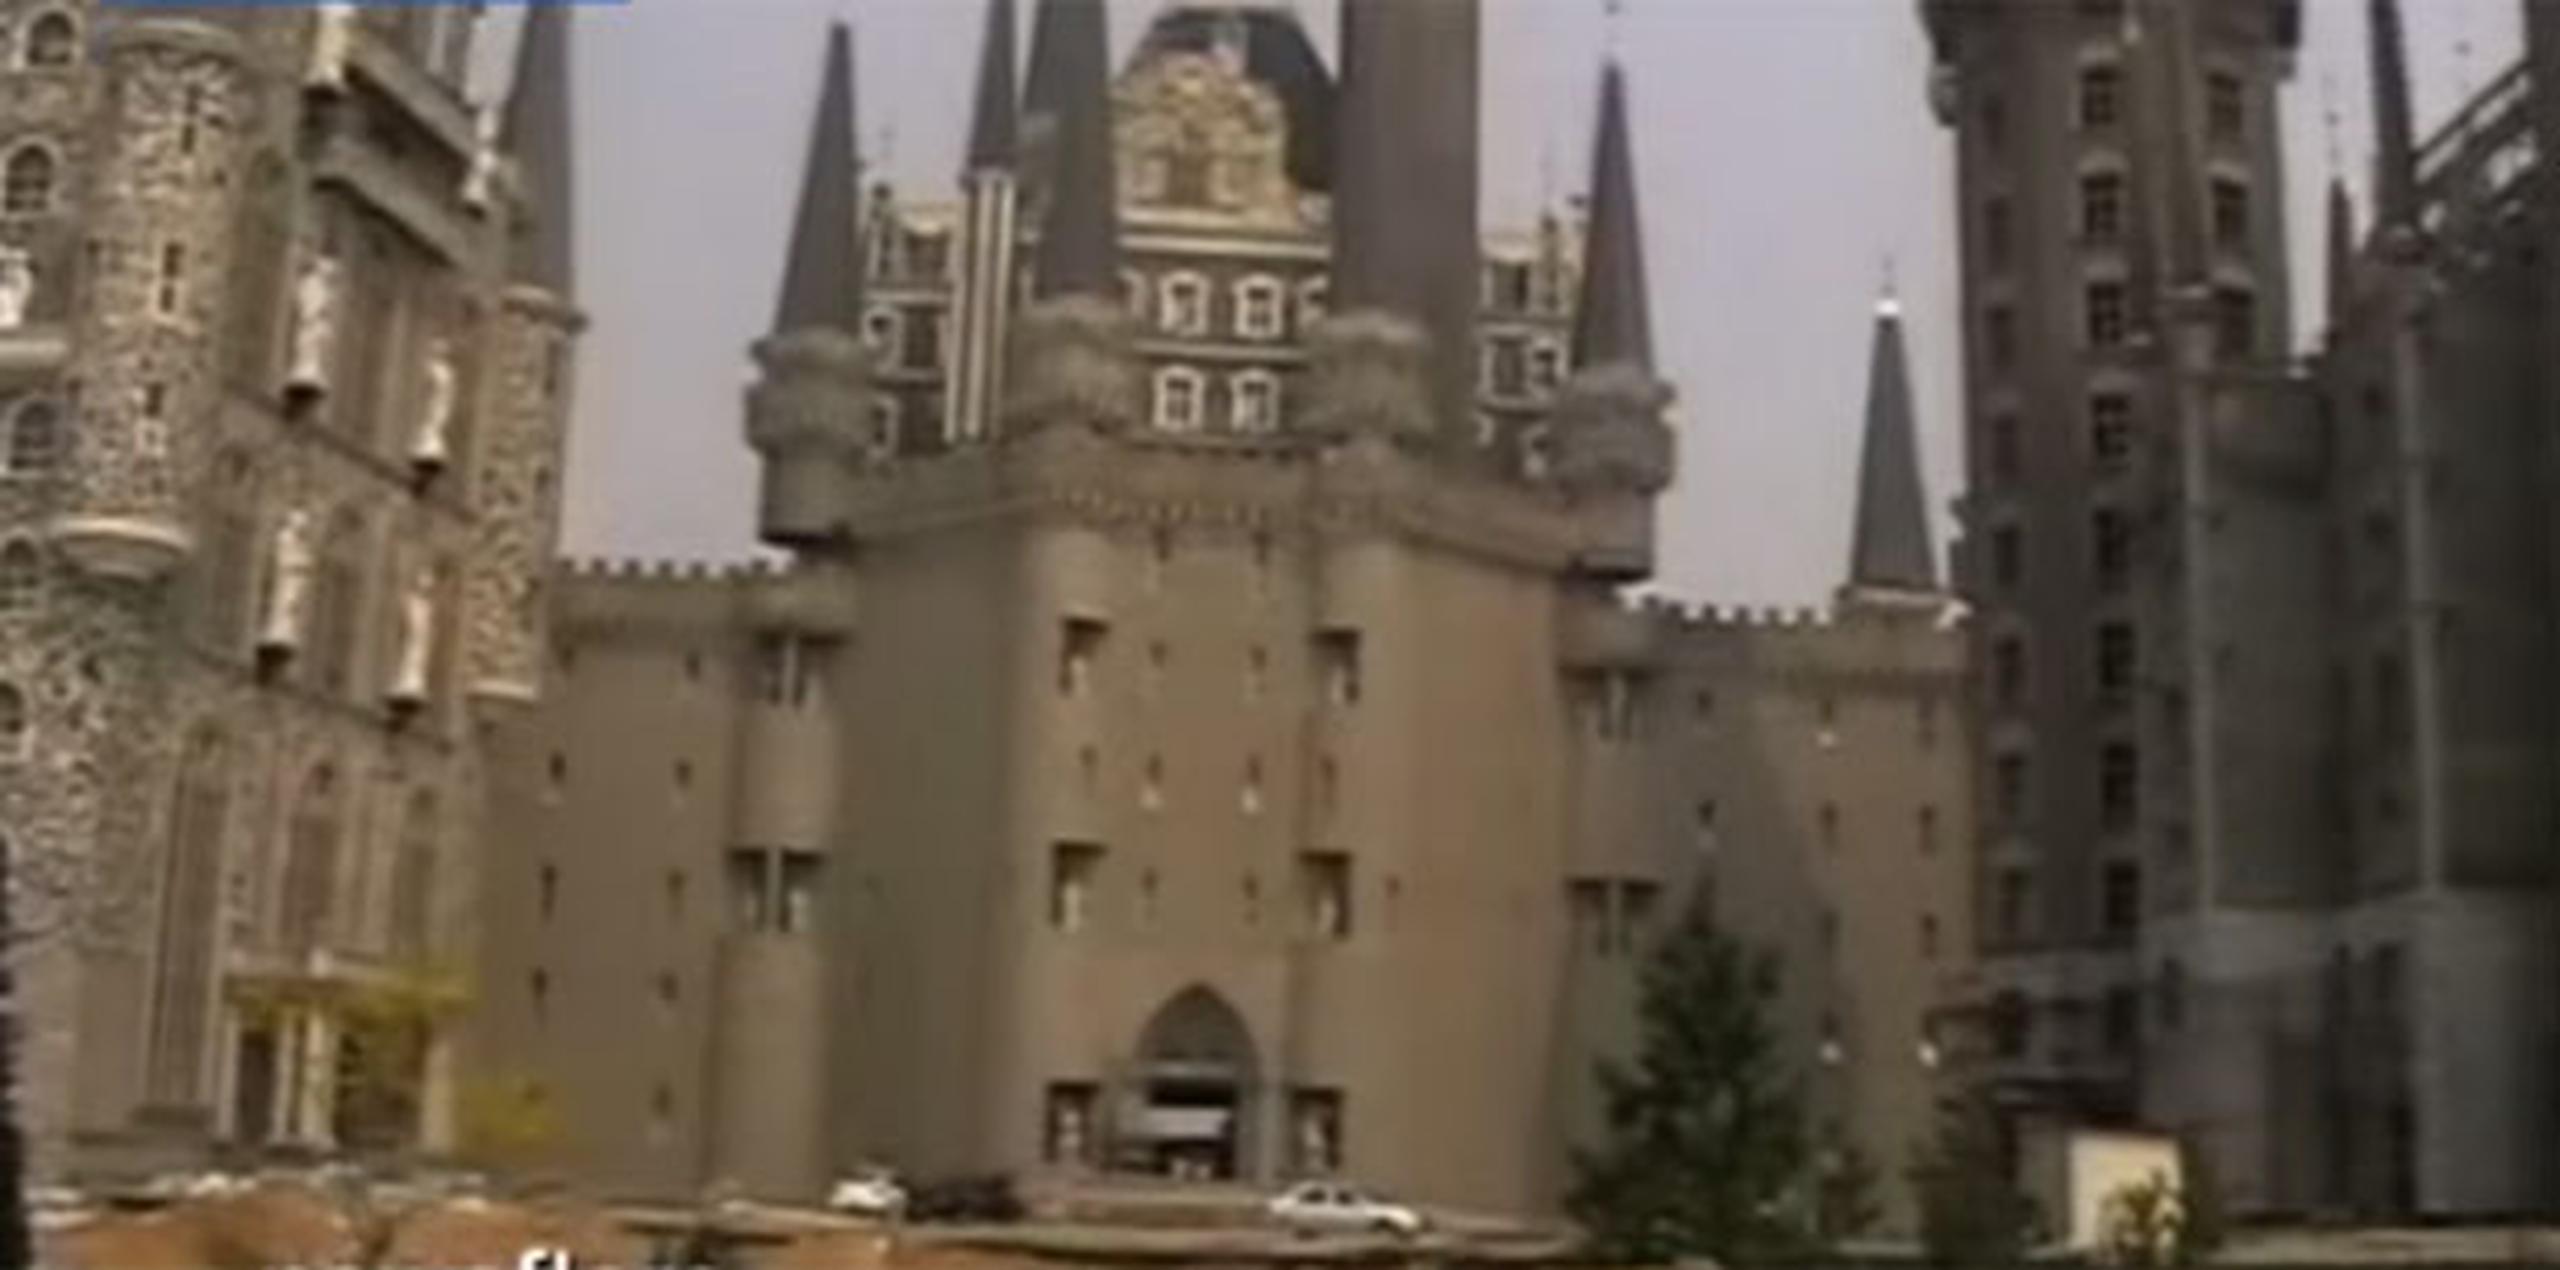 La estructura, denominada "Castillo de la Cenicienta", parece sacada de un cuento de hadas y tiene, entre otros elementos, una torre de reloj, varias torres en punta de estilo gótico y muros almenados. (YouTube)